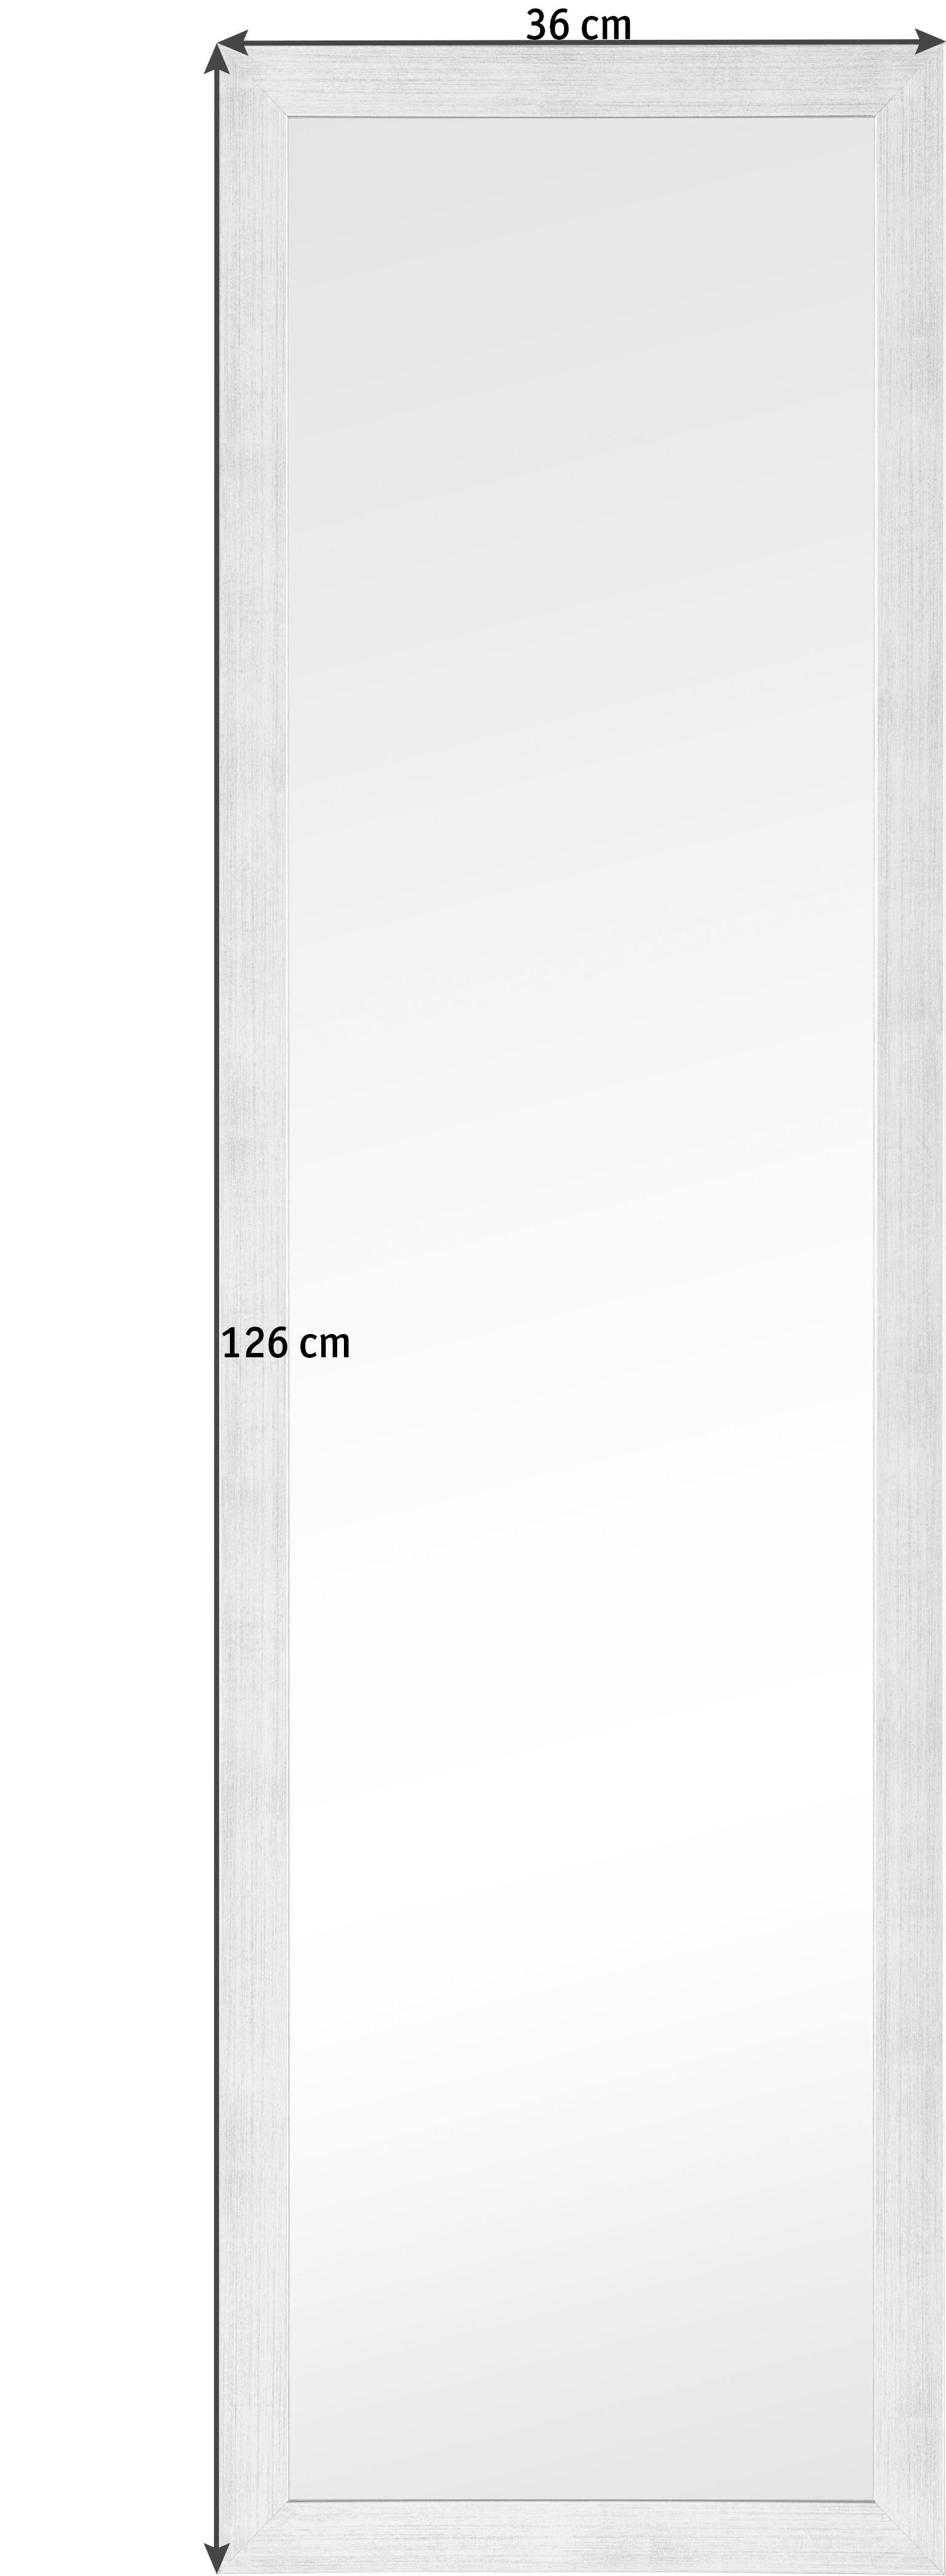 ZIDNO OGLEDALO    36/126 cm   - srebrna, Dizajnerski, staklo/pločasti materijal (36/126cm)